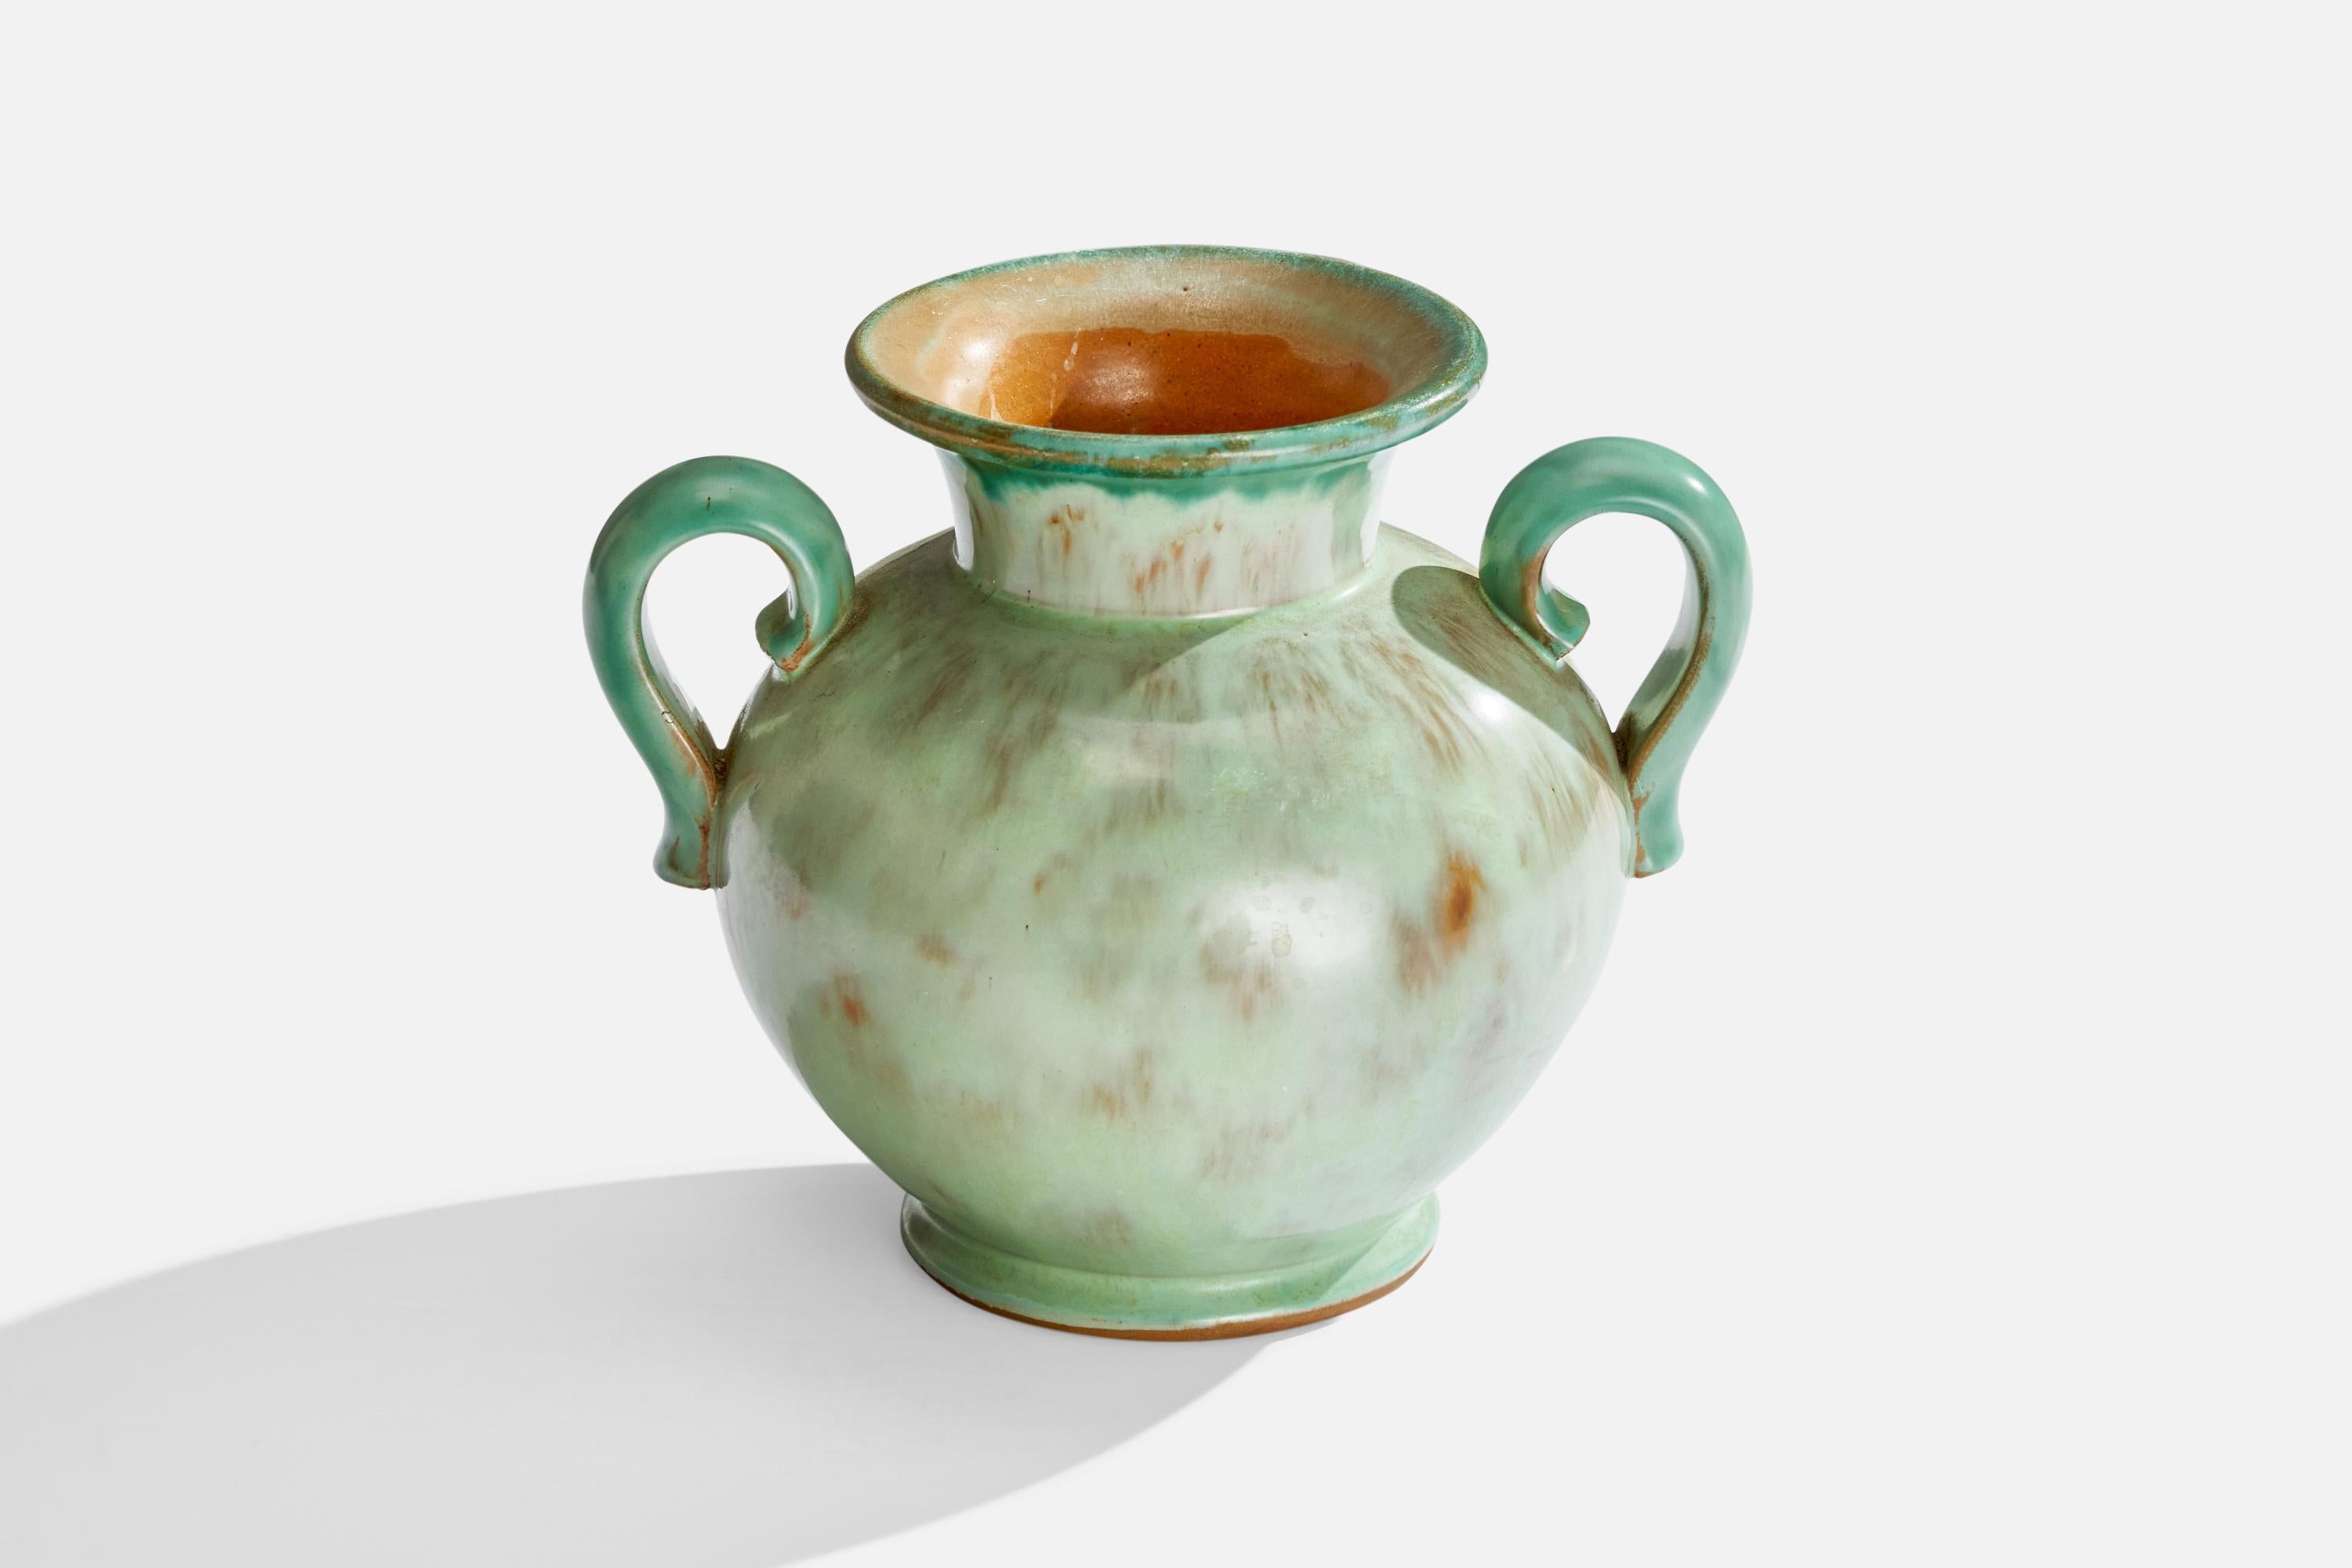 Grün glasierte Keramikvase, entworfen von Christer Heijl und hergestellt von Töreboda Keramik, Schweden, 1930er Jahre.